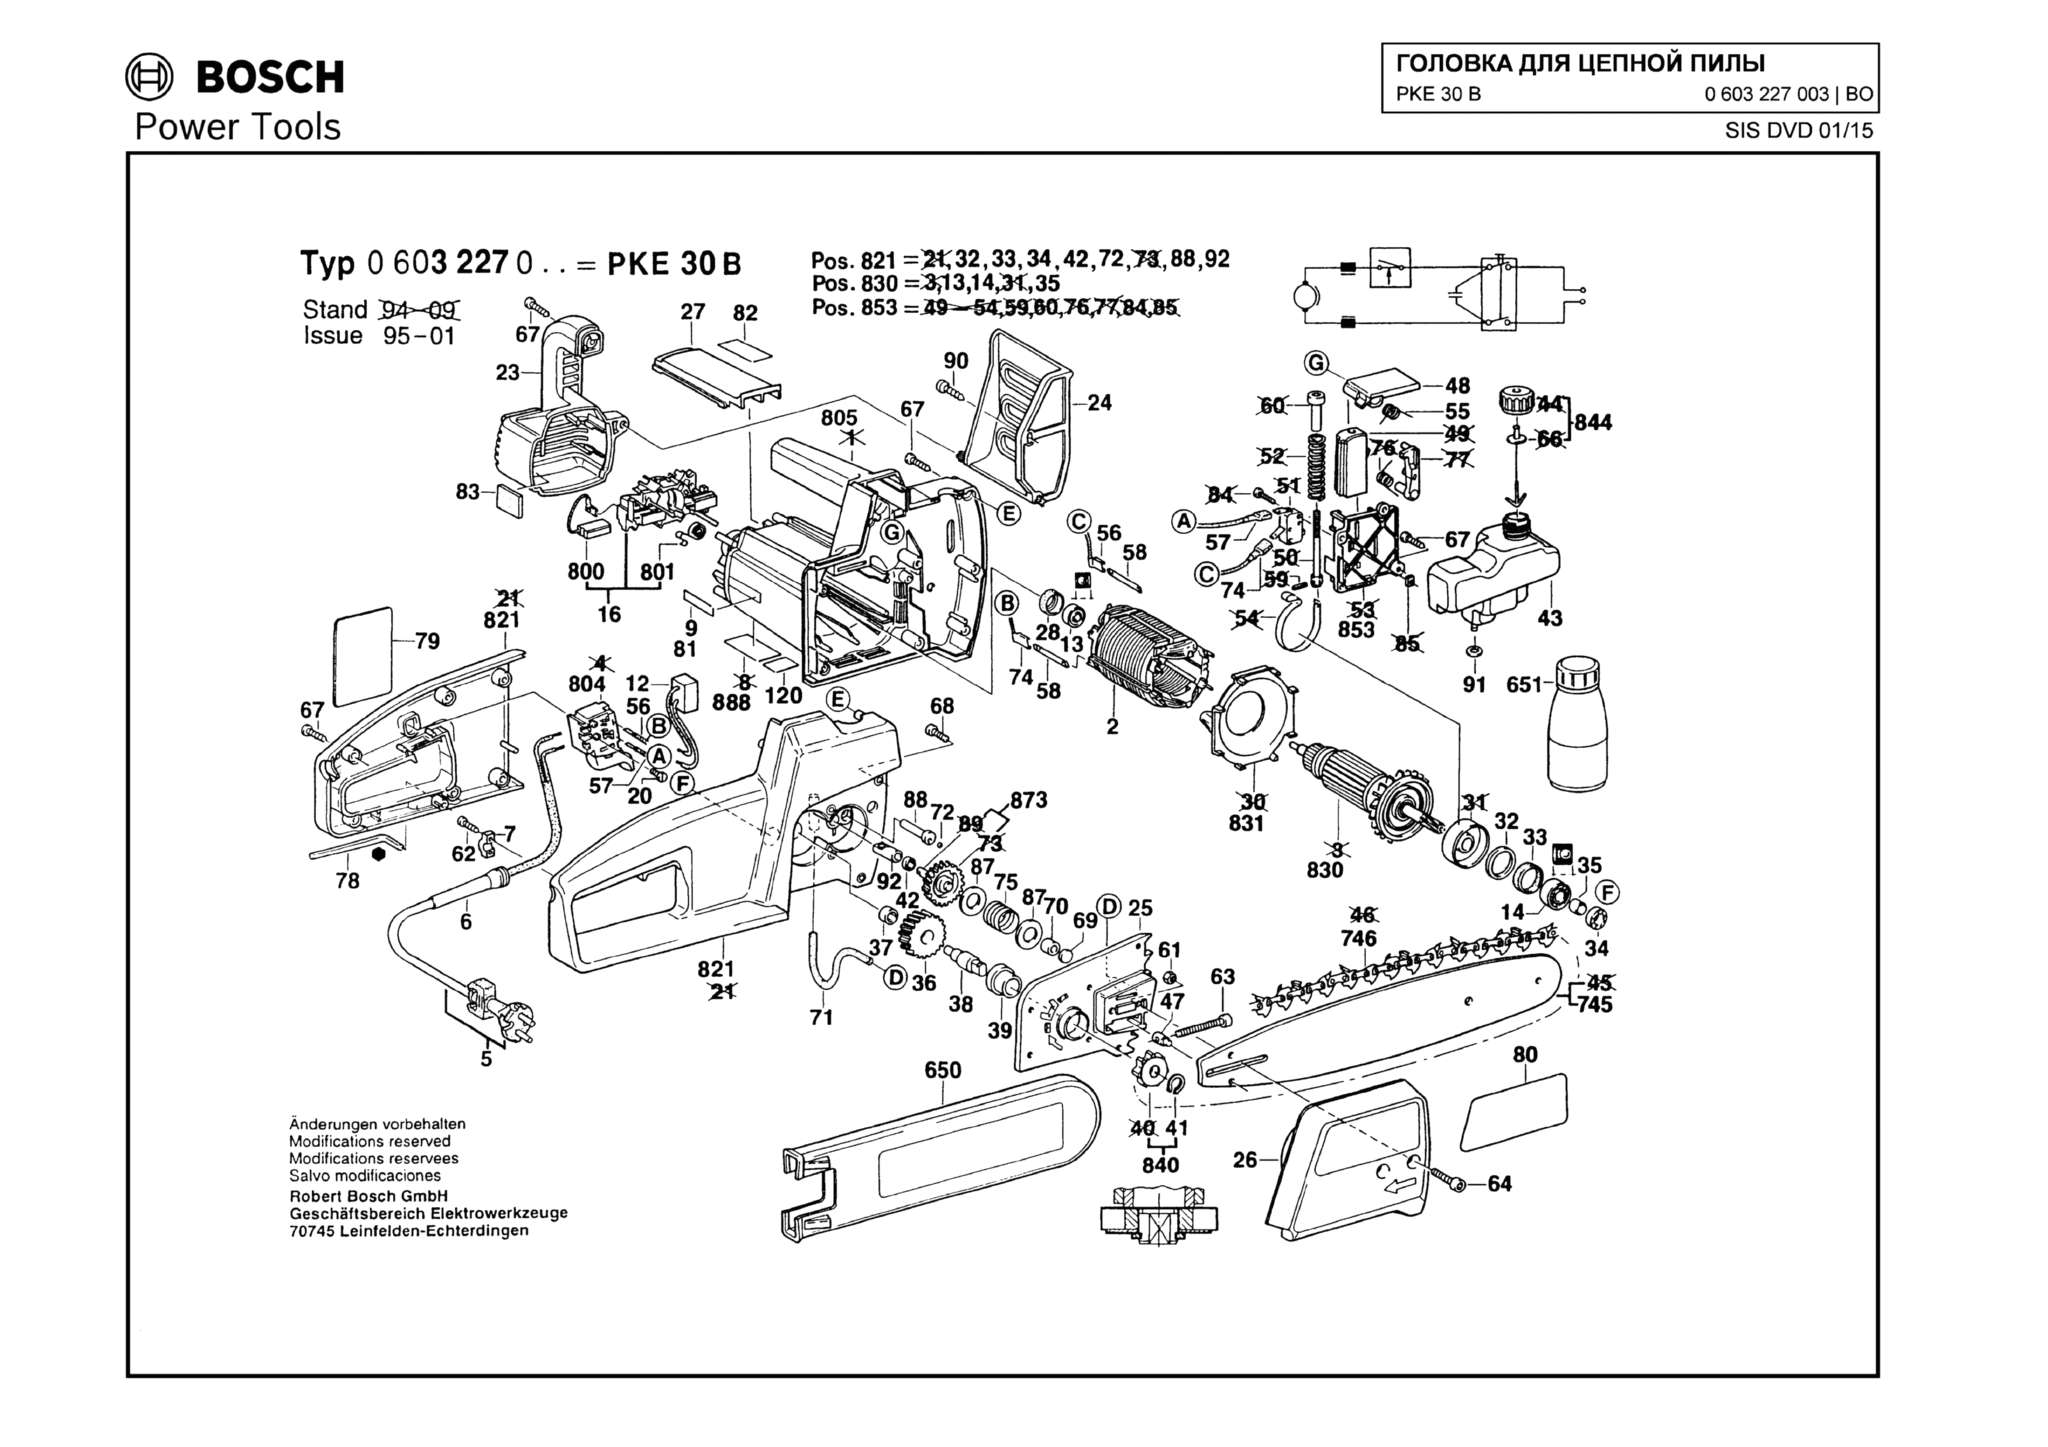 Запчасти, схема и деталировка Bosch PKE 30 B (ТИП 0603227003)